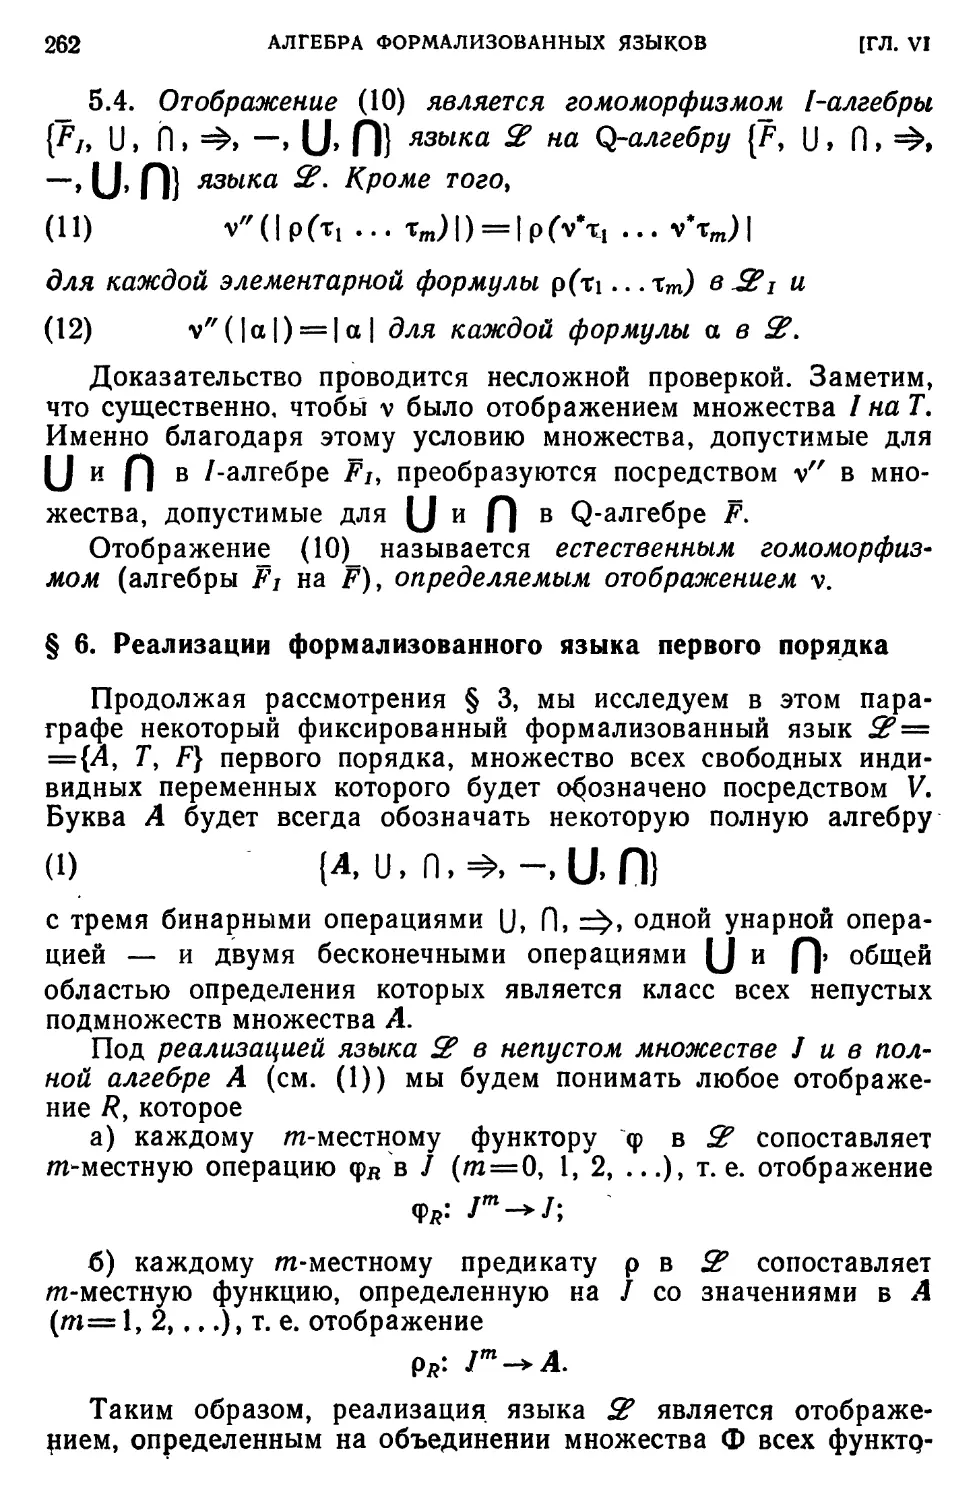 § 6. Реализации формализованного языка первого порядка